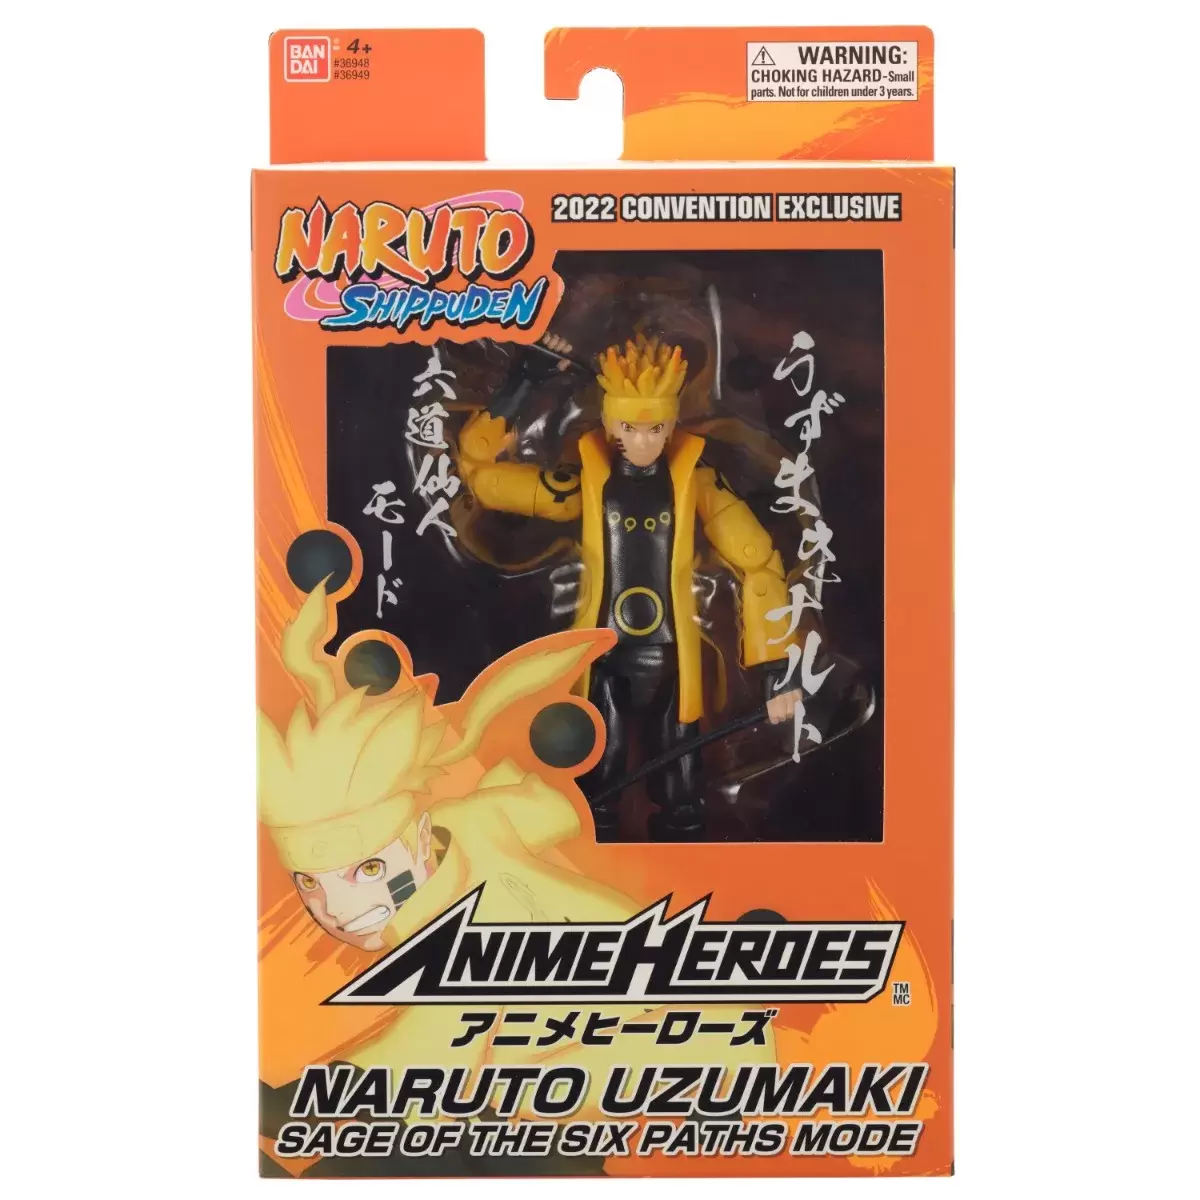 Figurine Naruto Shippuden - Uzumaki Naruto - Anime Heroes Bandai